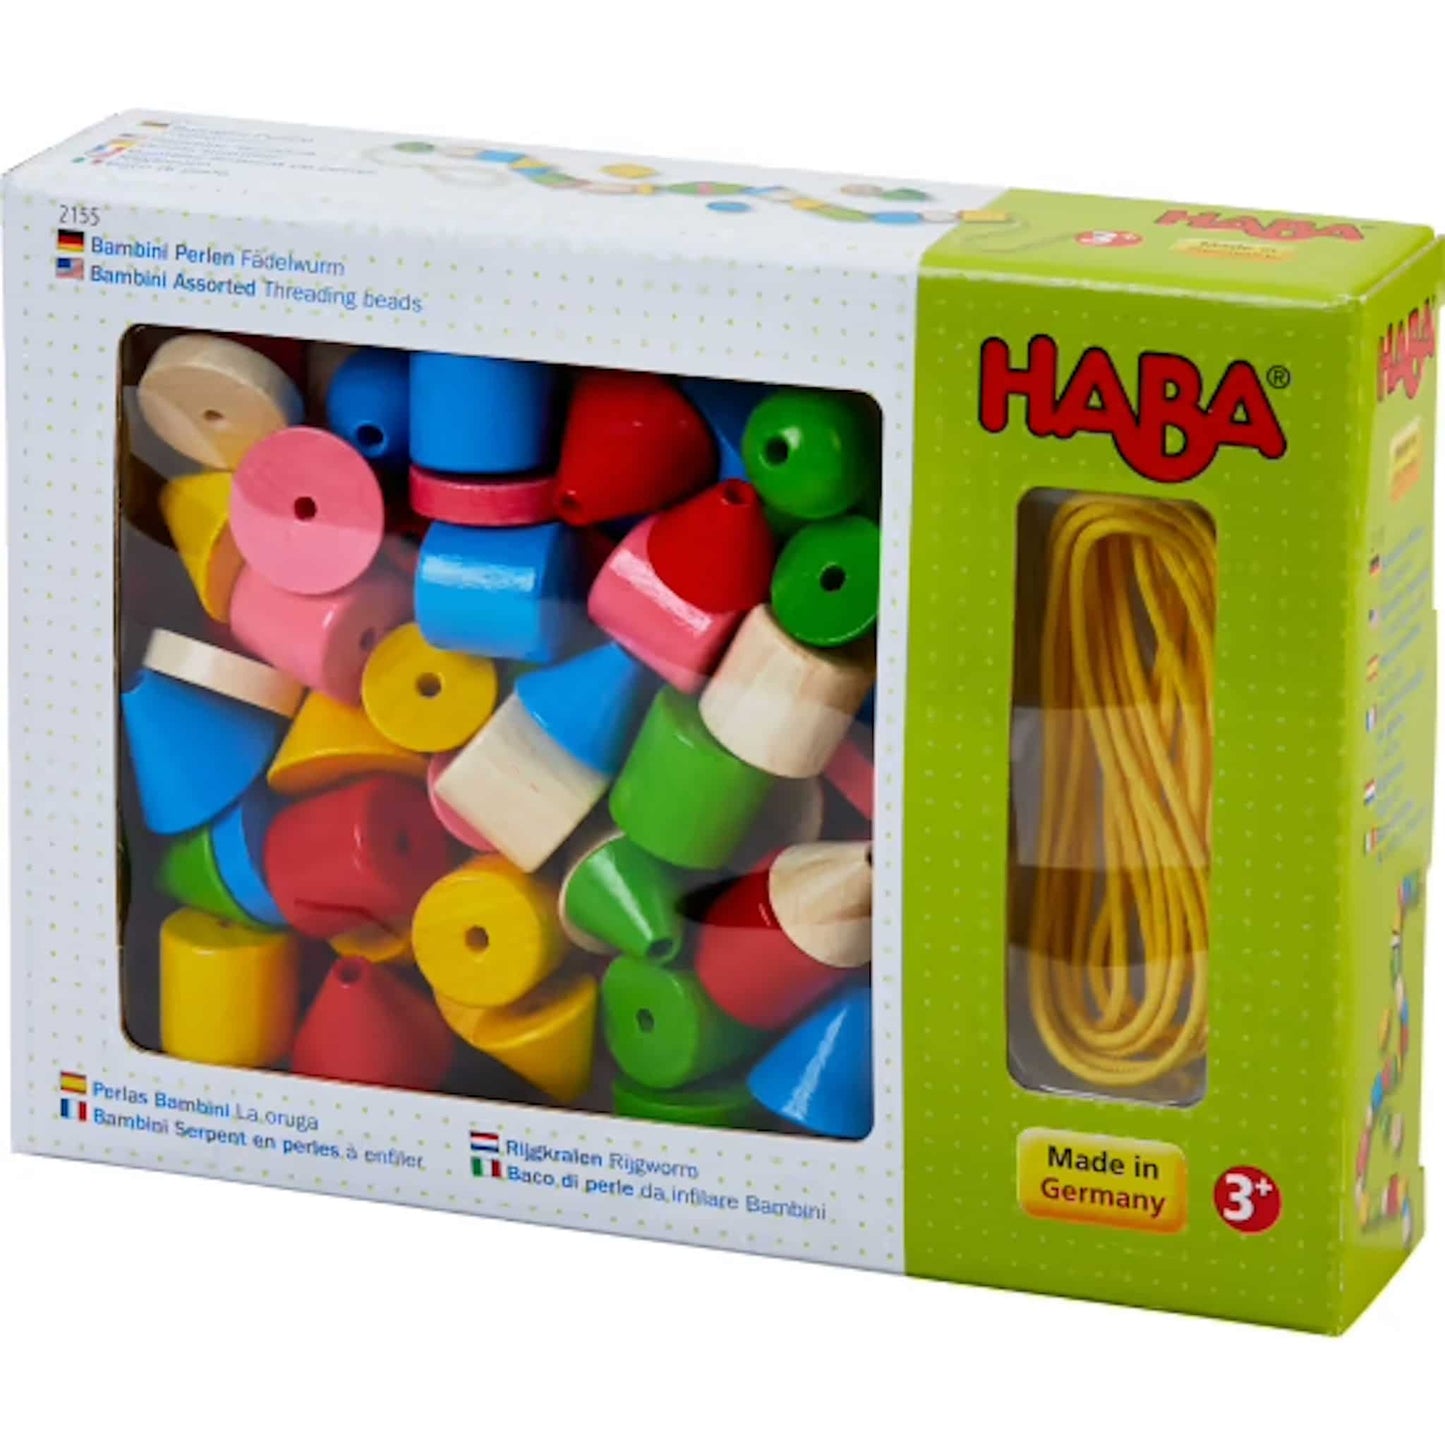 HABA Bambini Assorted Threading Beads